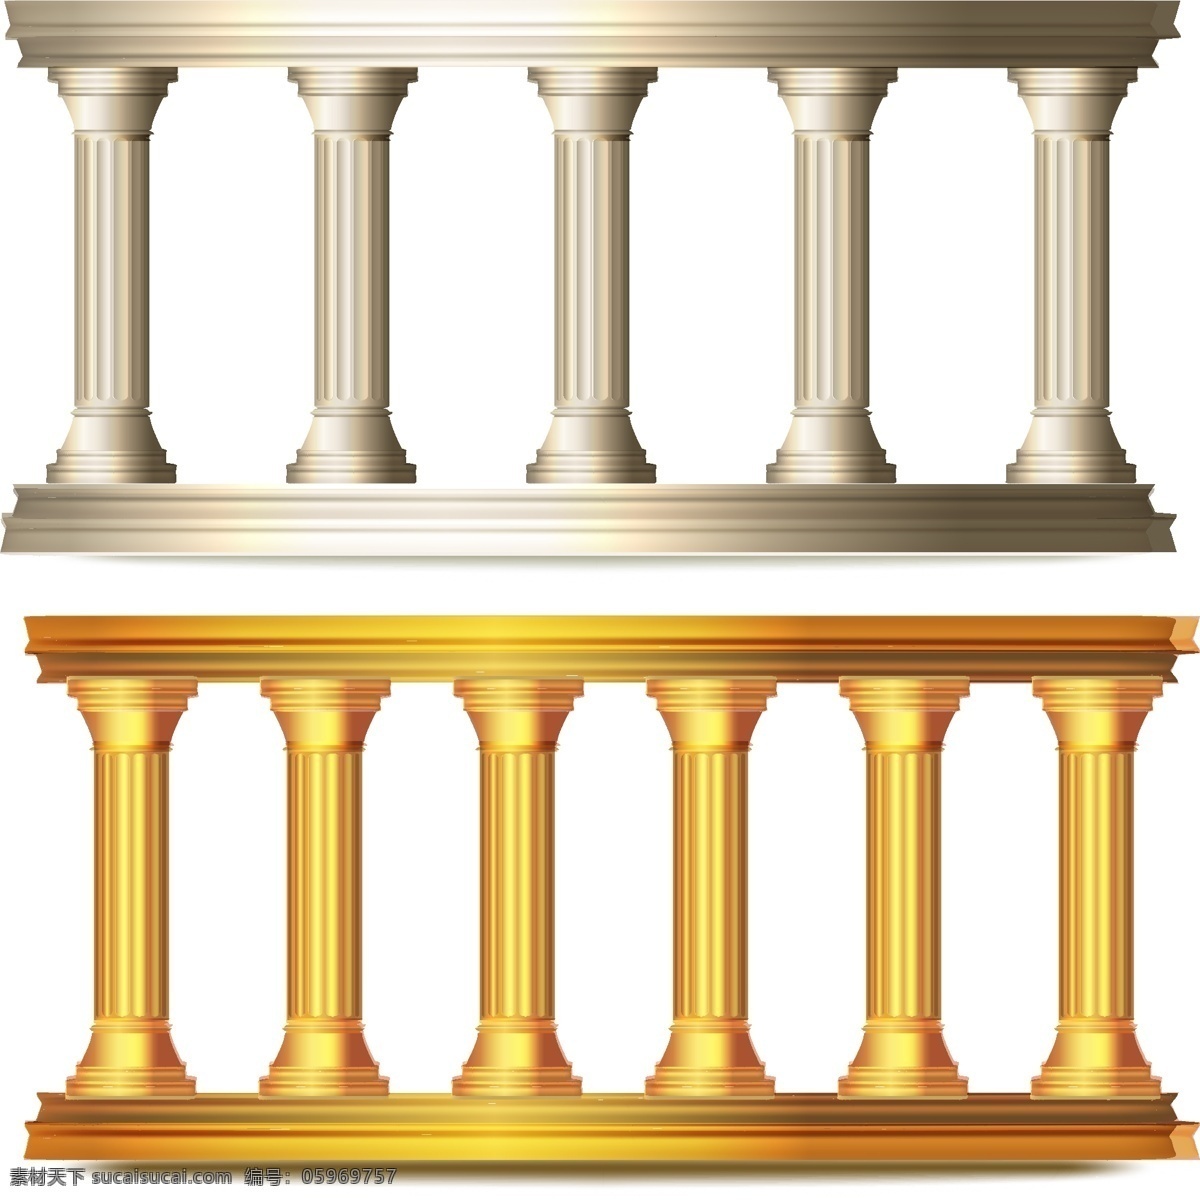 罗马柱 欧式罗马柱 罗马柱矢量 装饰框 欧式框 矢量罗马柱 罗马柱素材